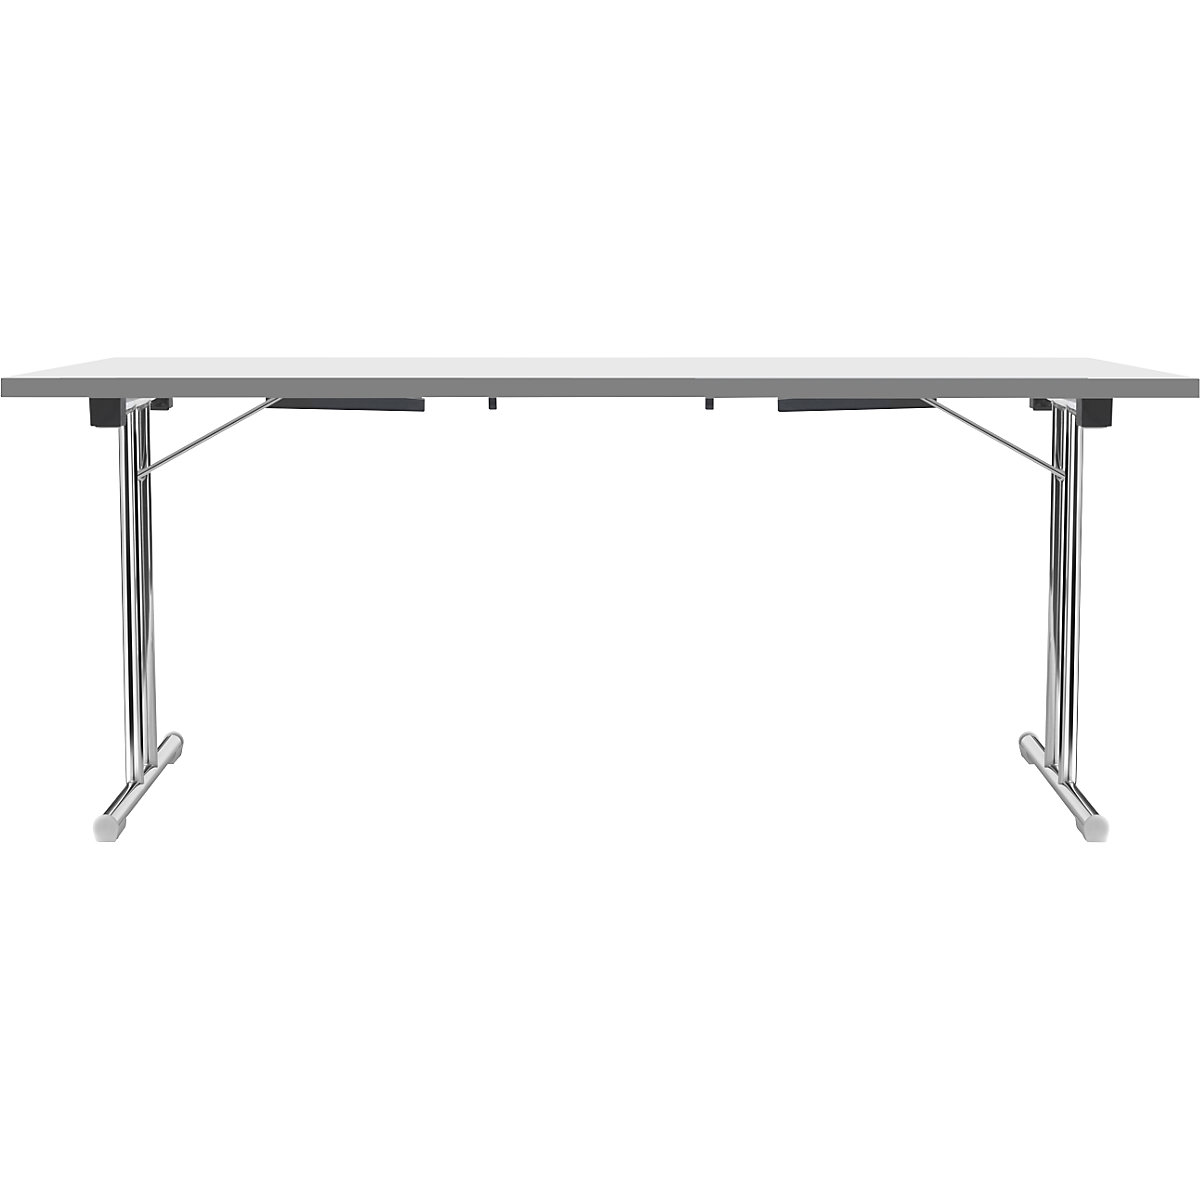 Tavolo pieghevole con basamento a T doppio, telaio in tubo tondo d'acciaio, cromato, bianco/antracite, largh. x prof. 1800 x 800 mm-9